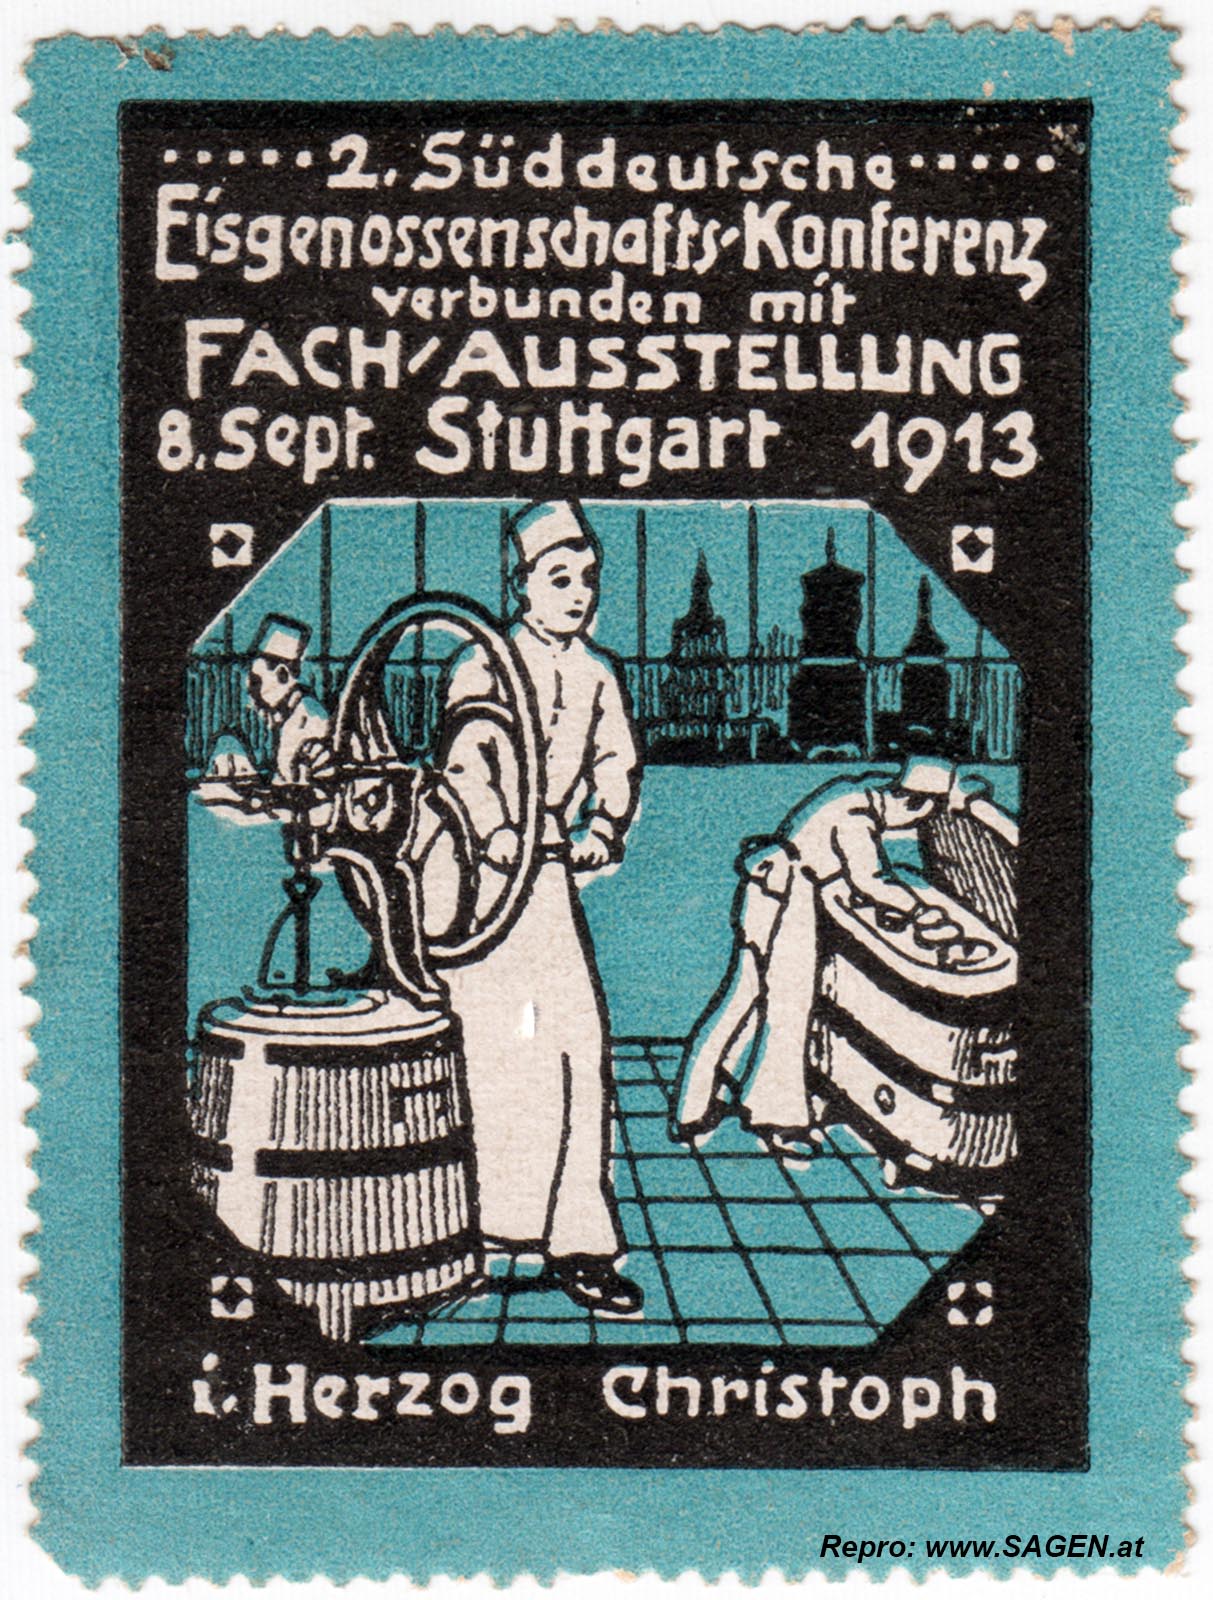 Reklamemarke Eisgenossenschafts-Konferenz 1913